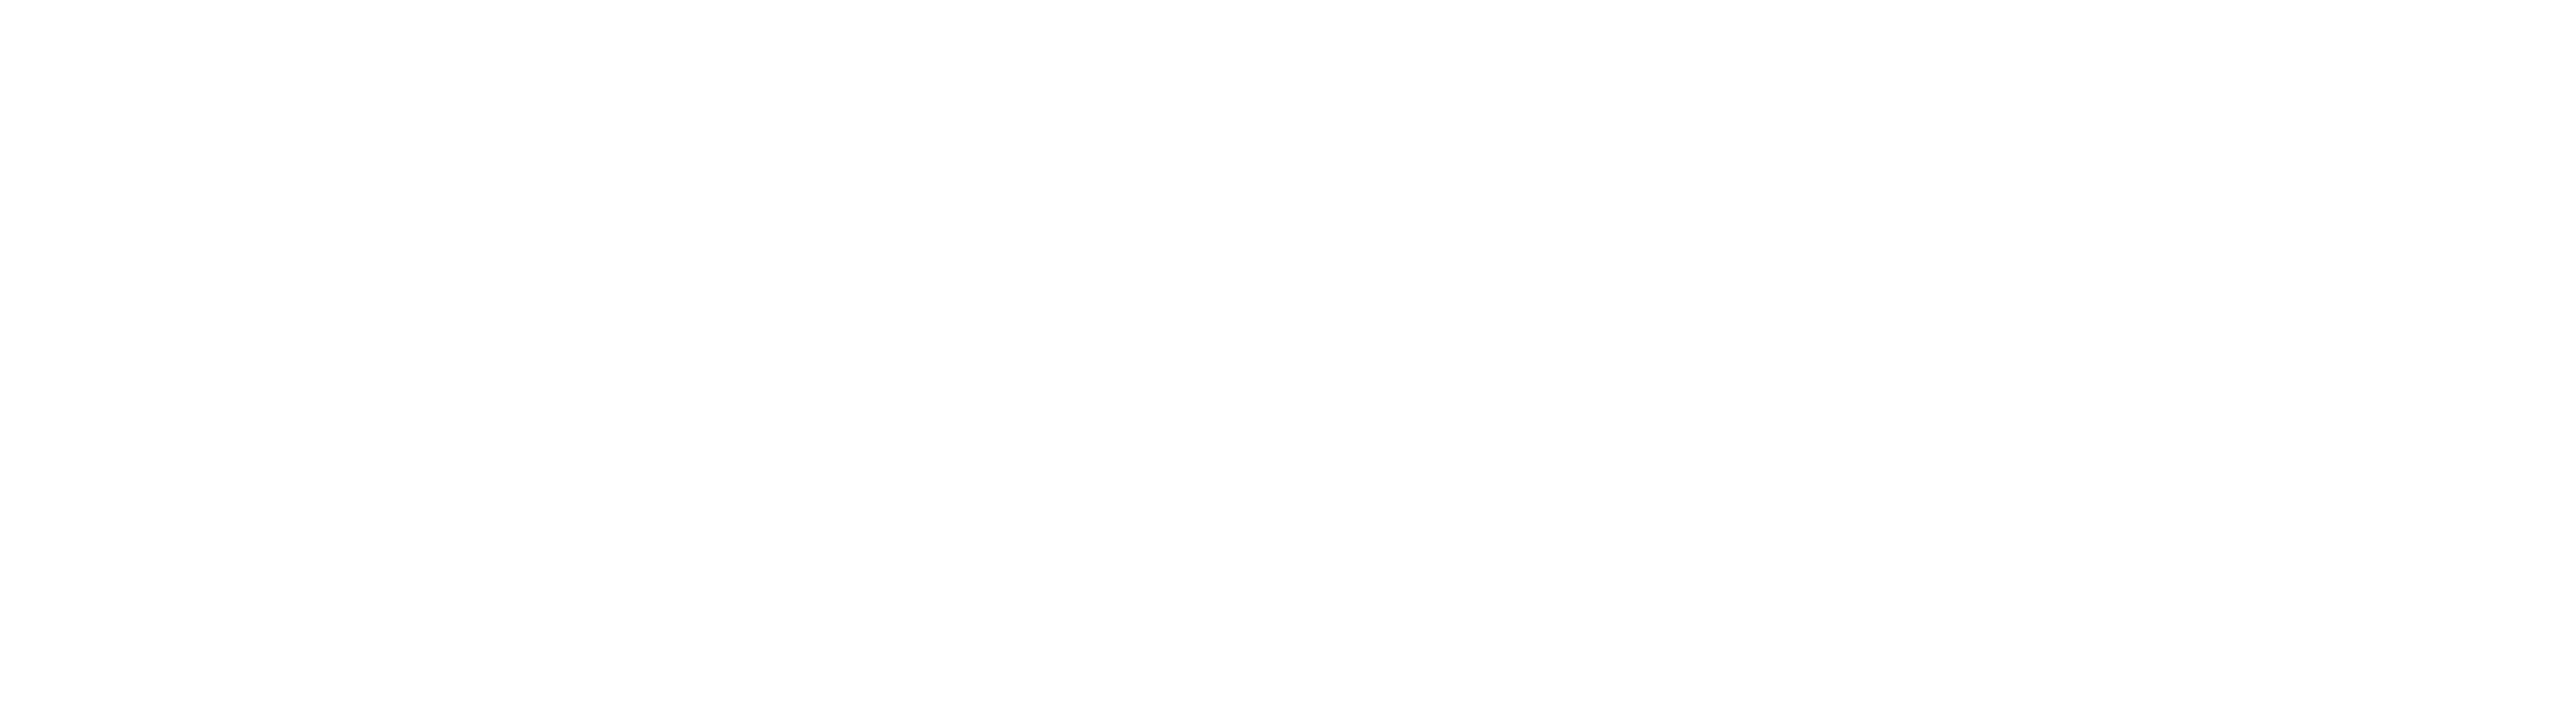 Maryland Fanduel Sportsbook